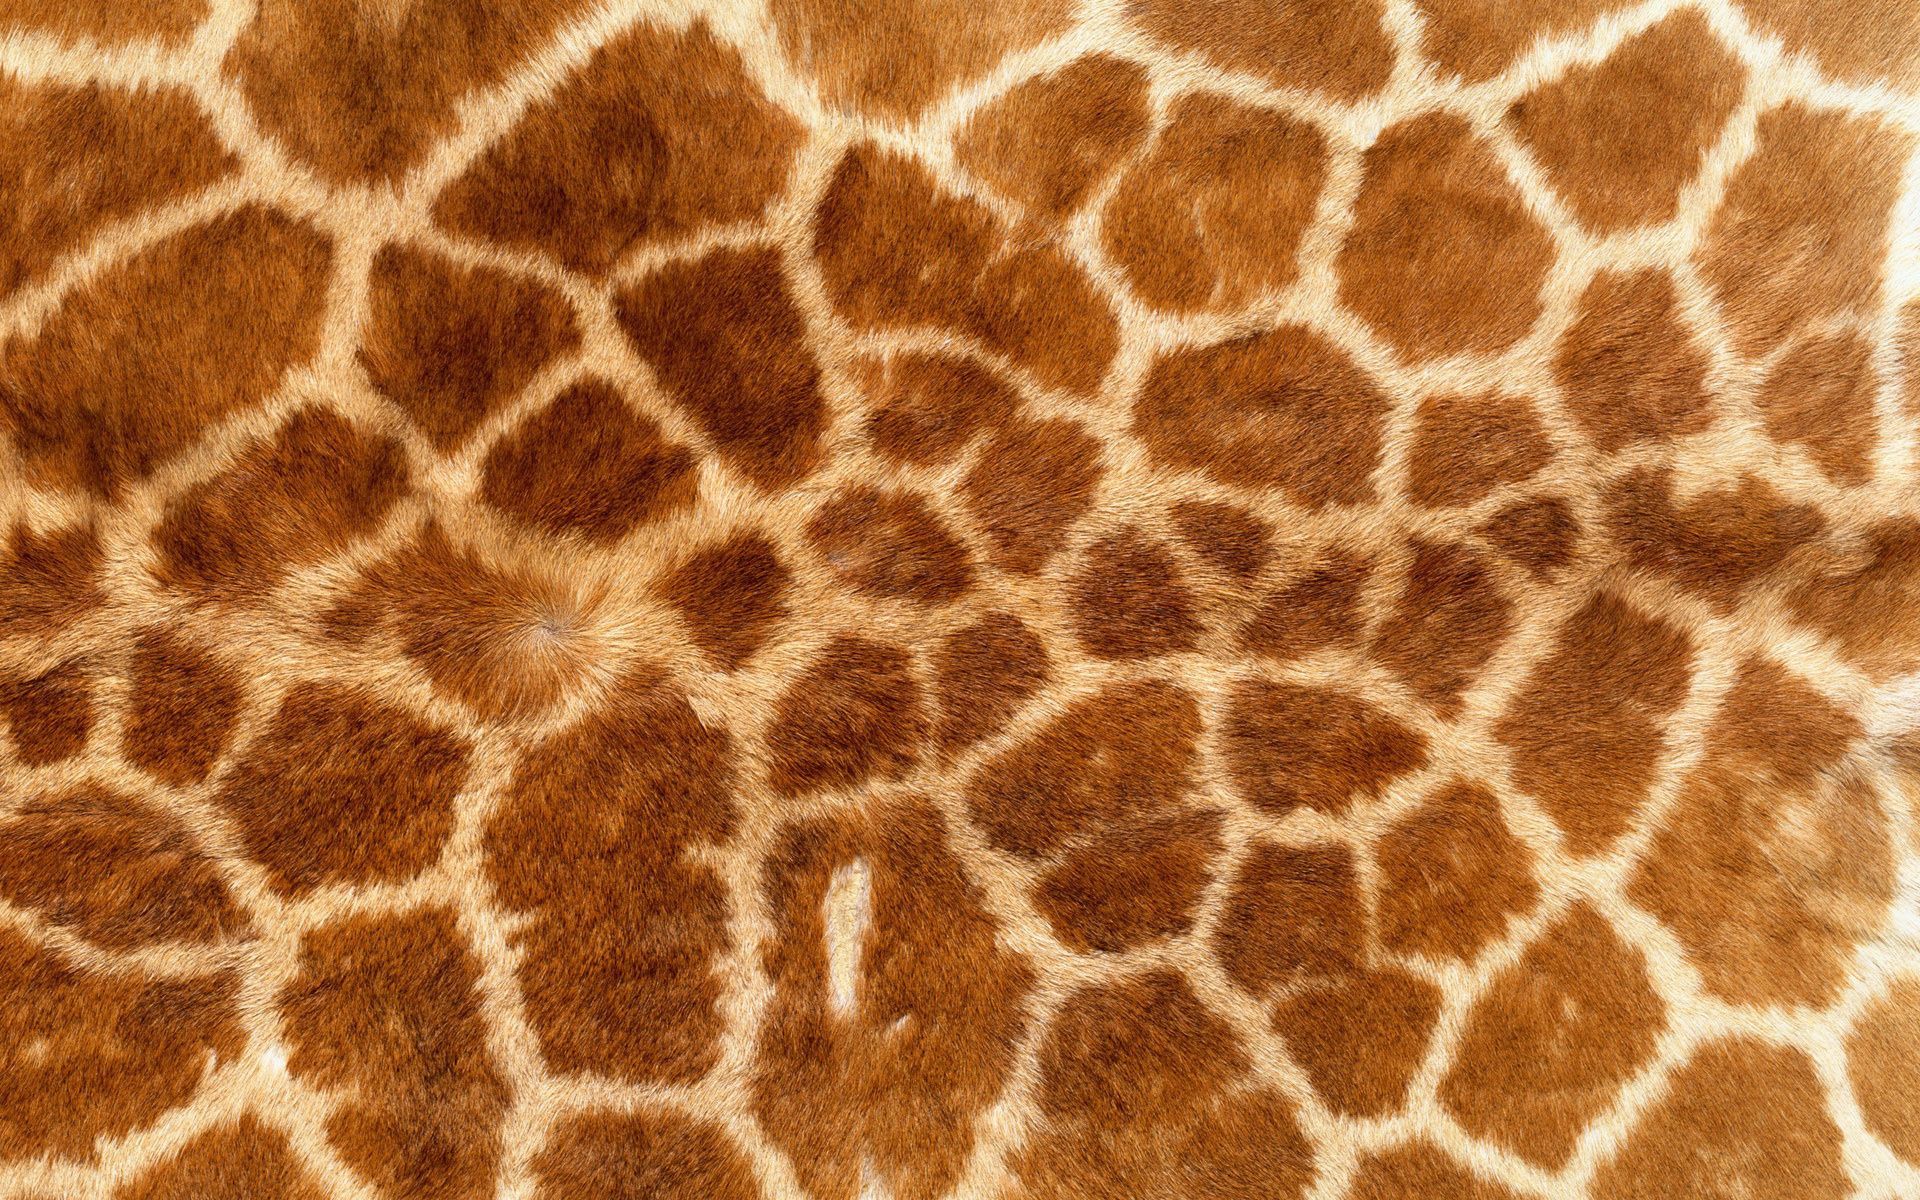 giraffe wallpapers, desktop wallpaper » GoodWP.com